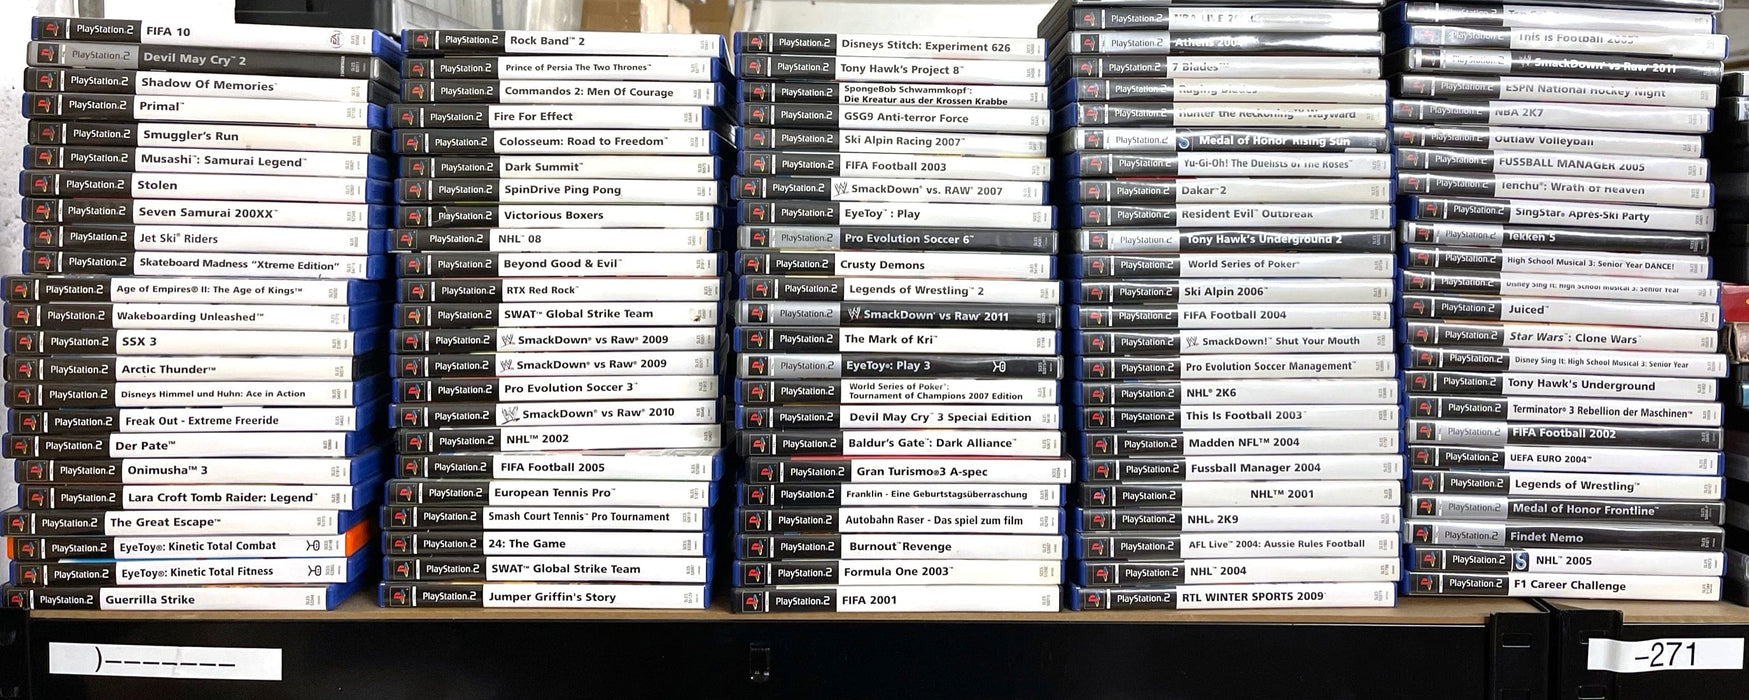 Glaciergames PlayStation 2 Game Der Herr der Ringe: Die Gefährten [Platinum] PlayStation 2 (Nr.455)